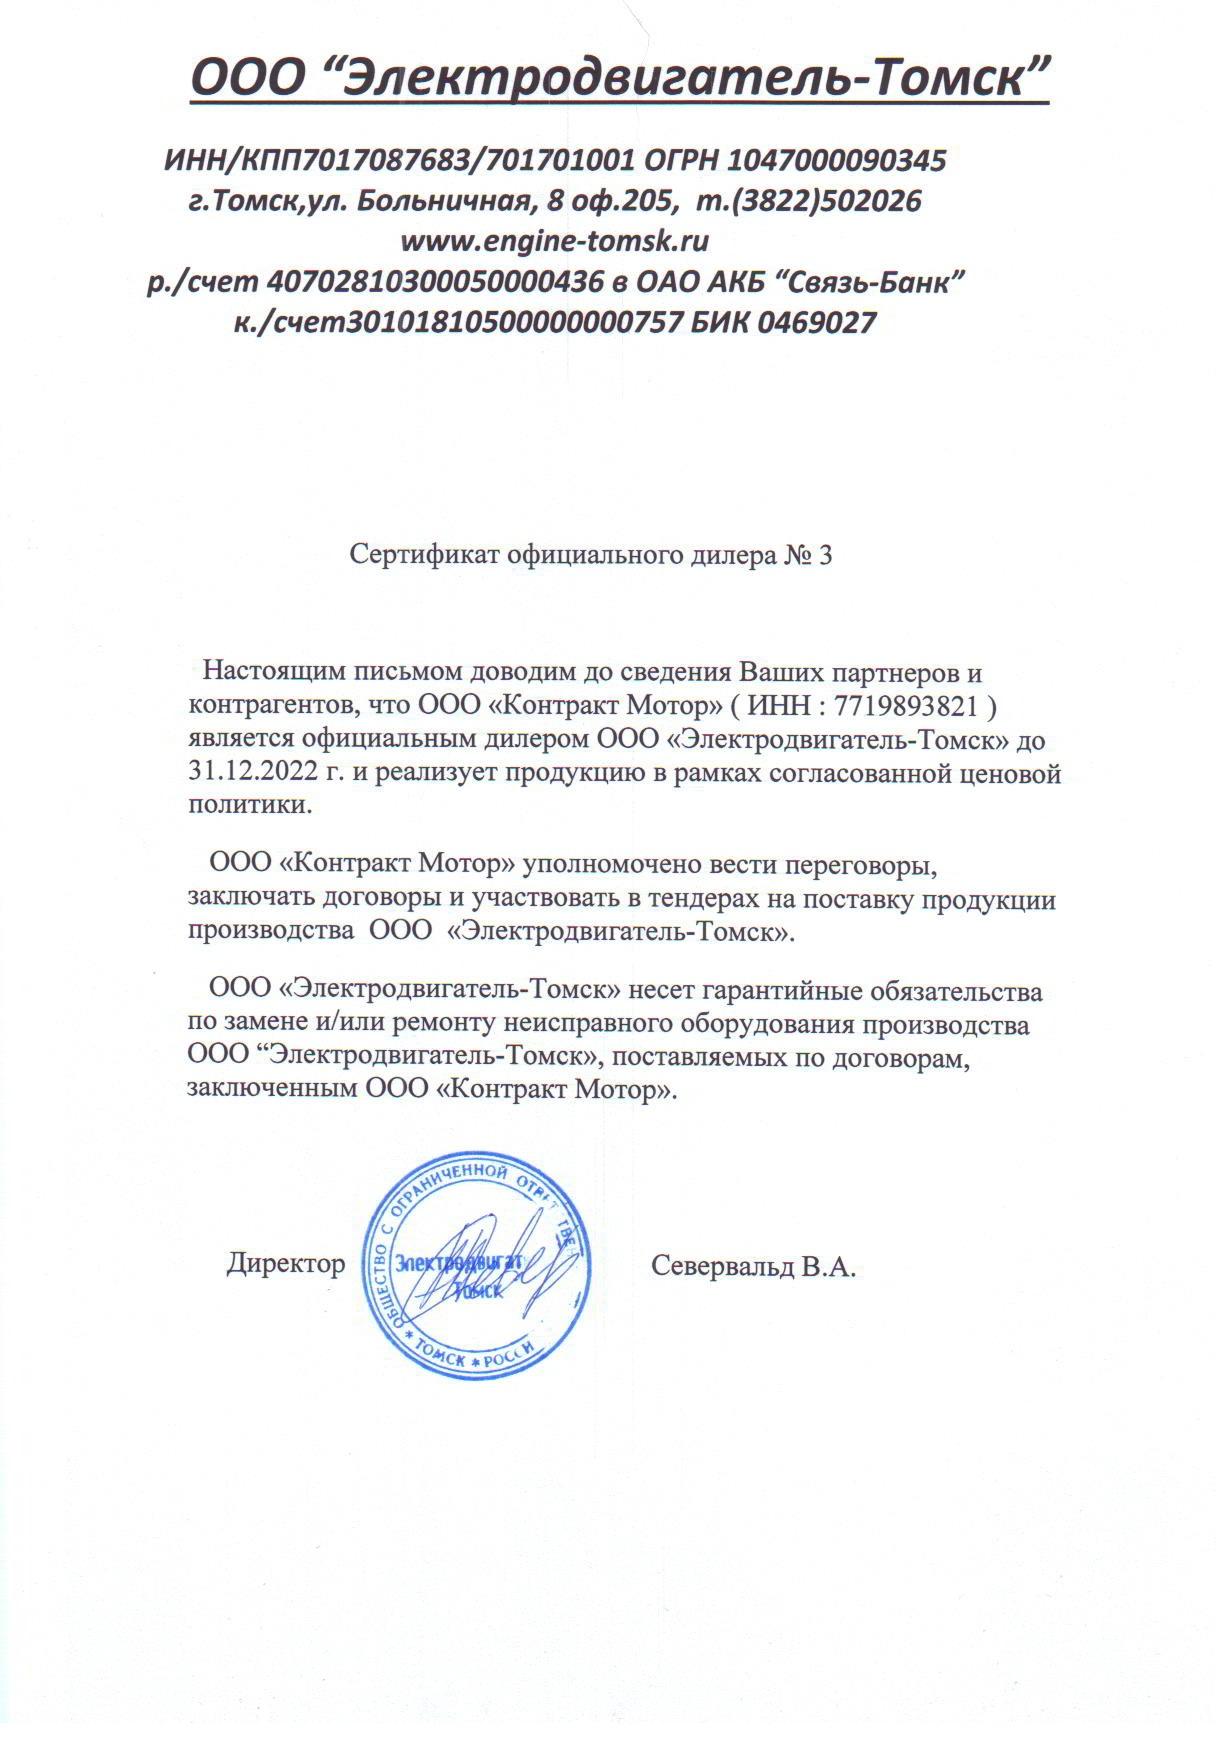 Сертификат ООО "Электродвигатель-Томск"